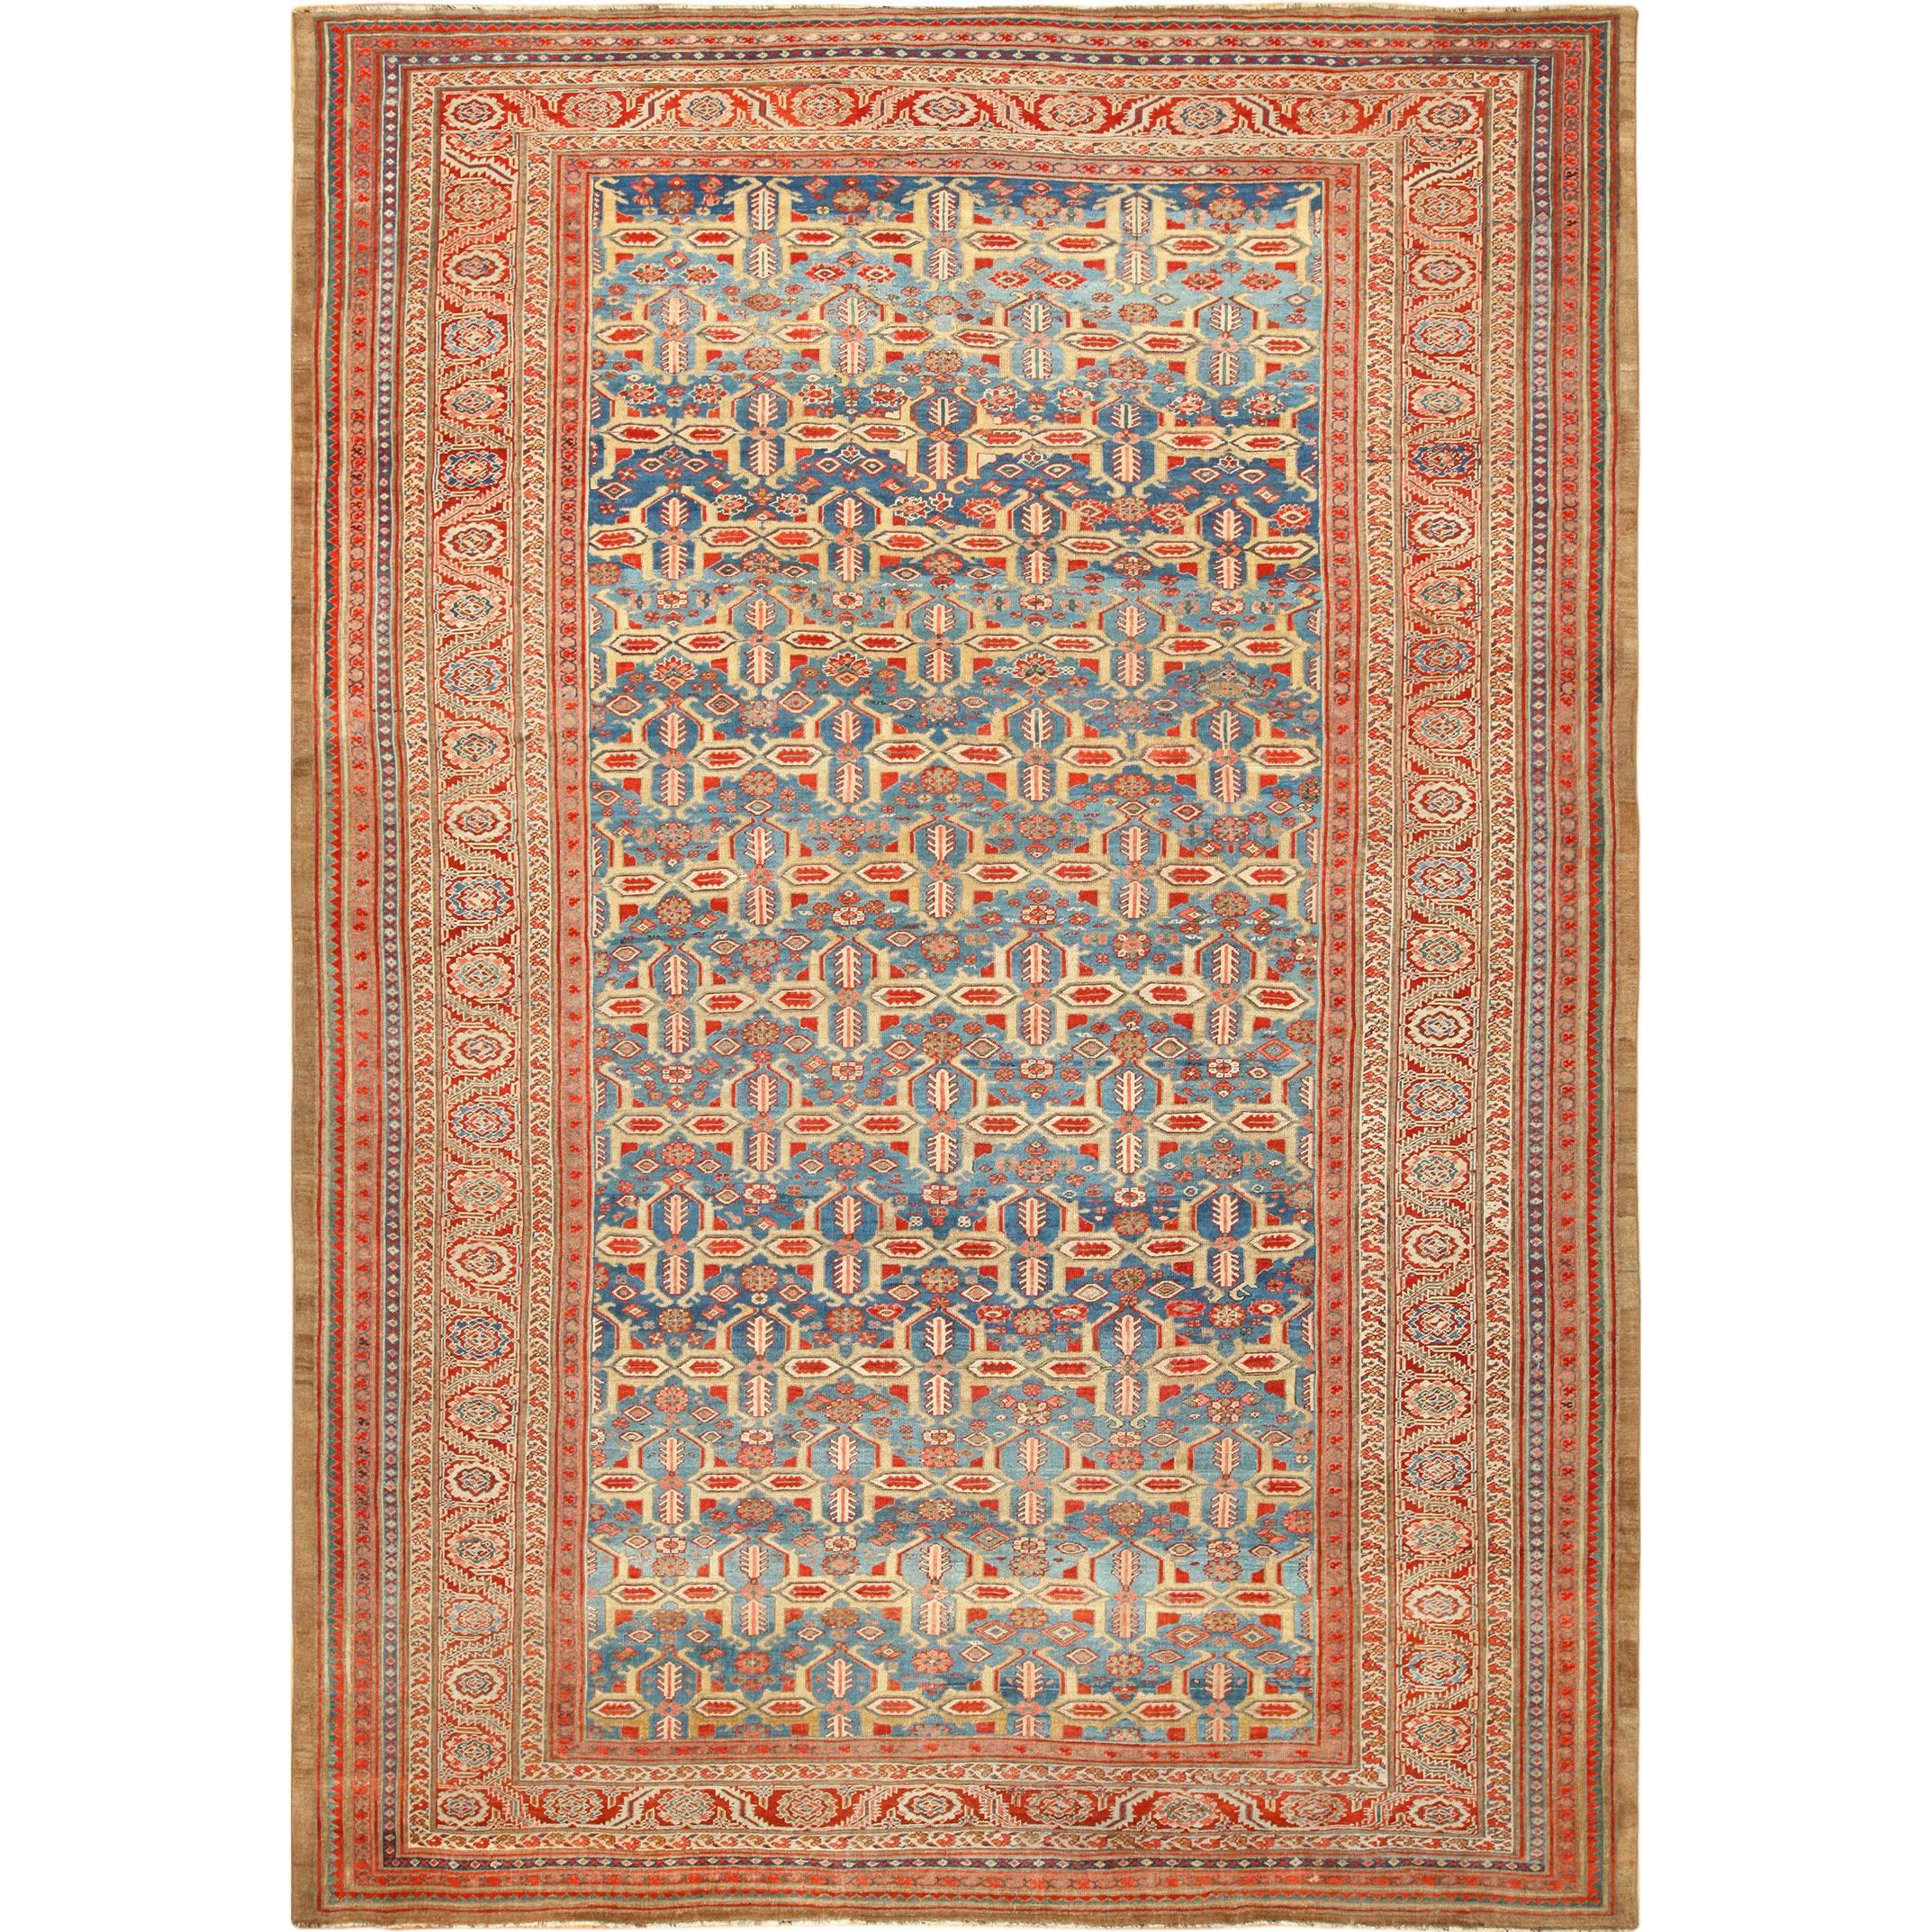 Large Blue Background Antique Bakshaish Persian Rug